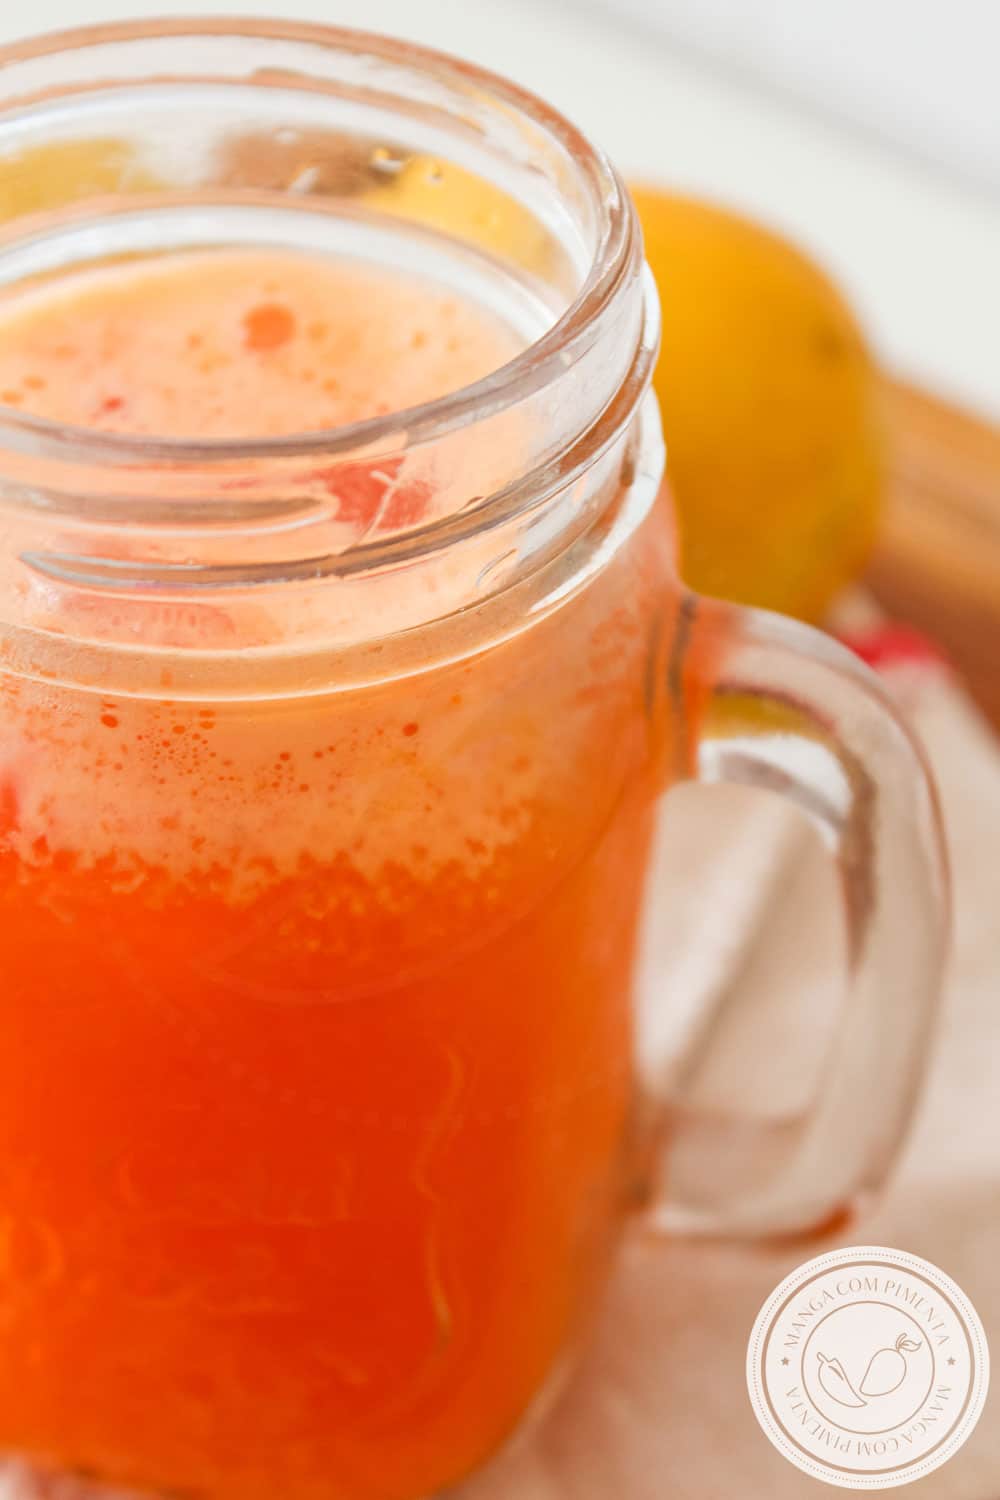 Suco de Laranja com Cenoura e Gengibre - Bebida nutritiva para matar a sede nesse verão.